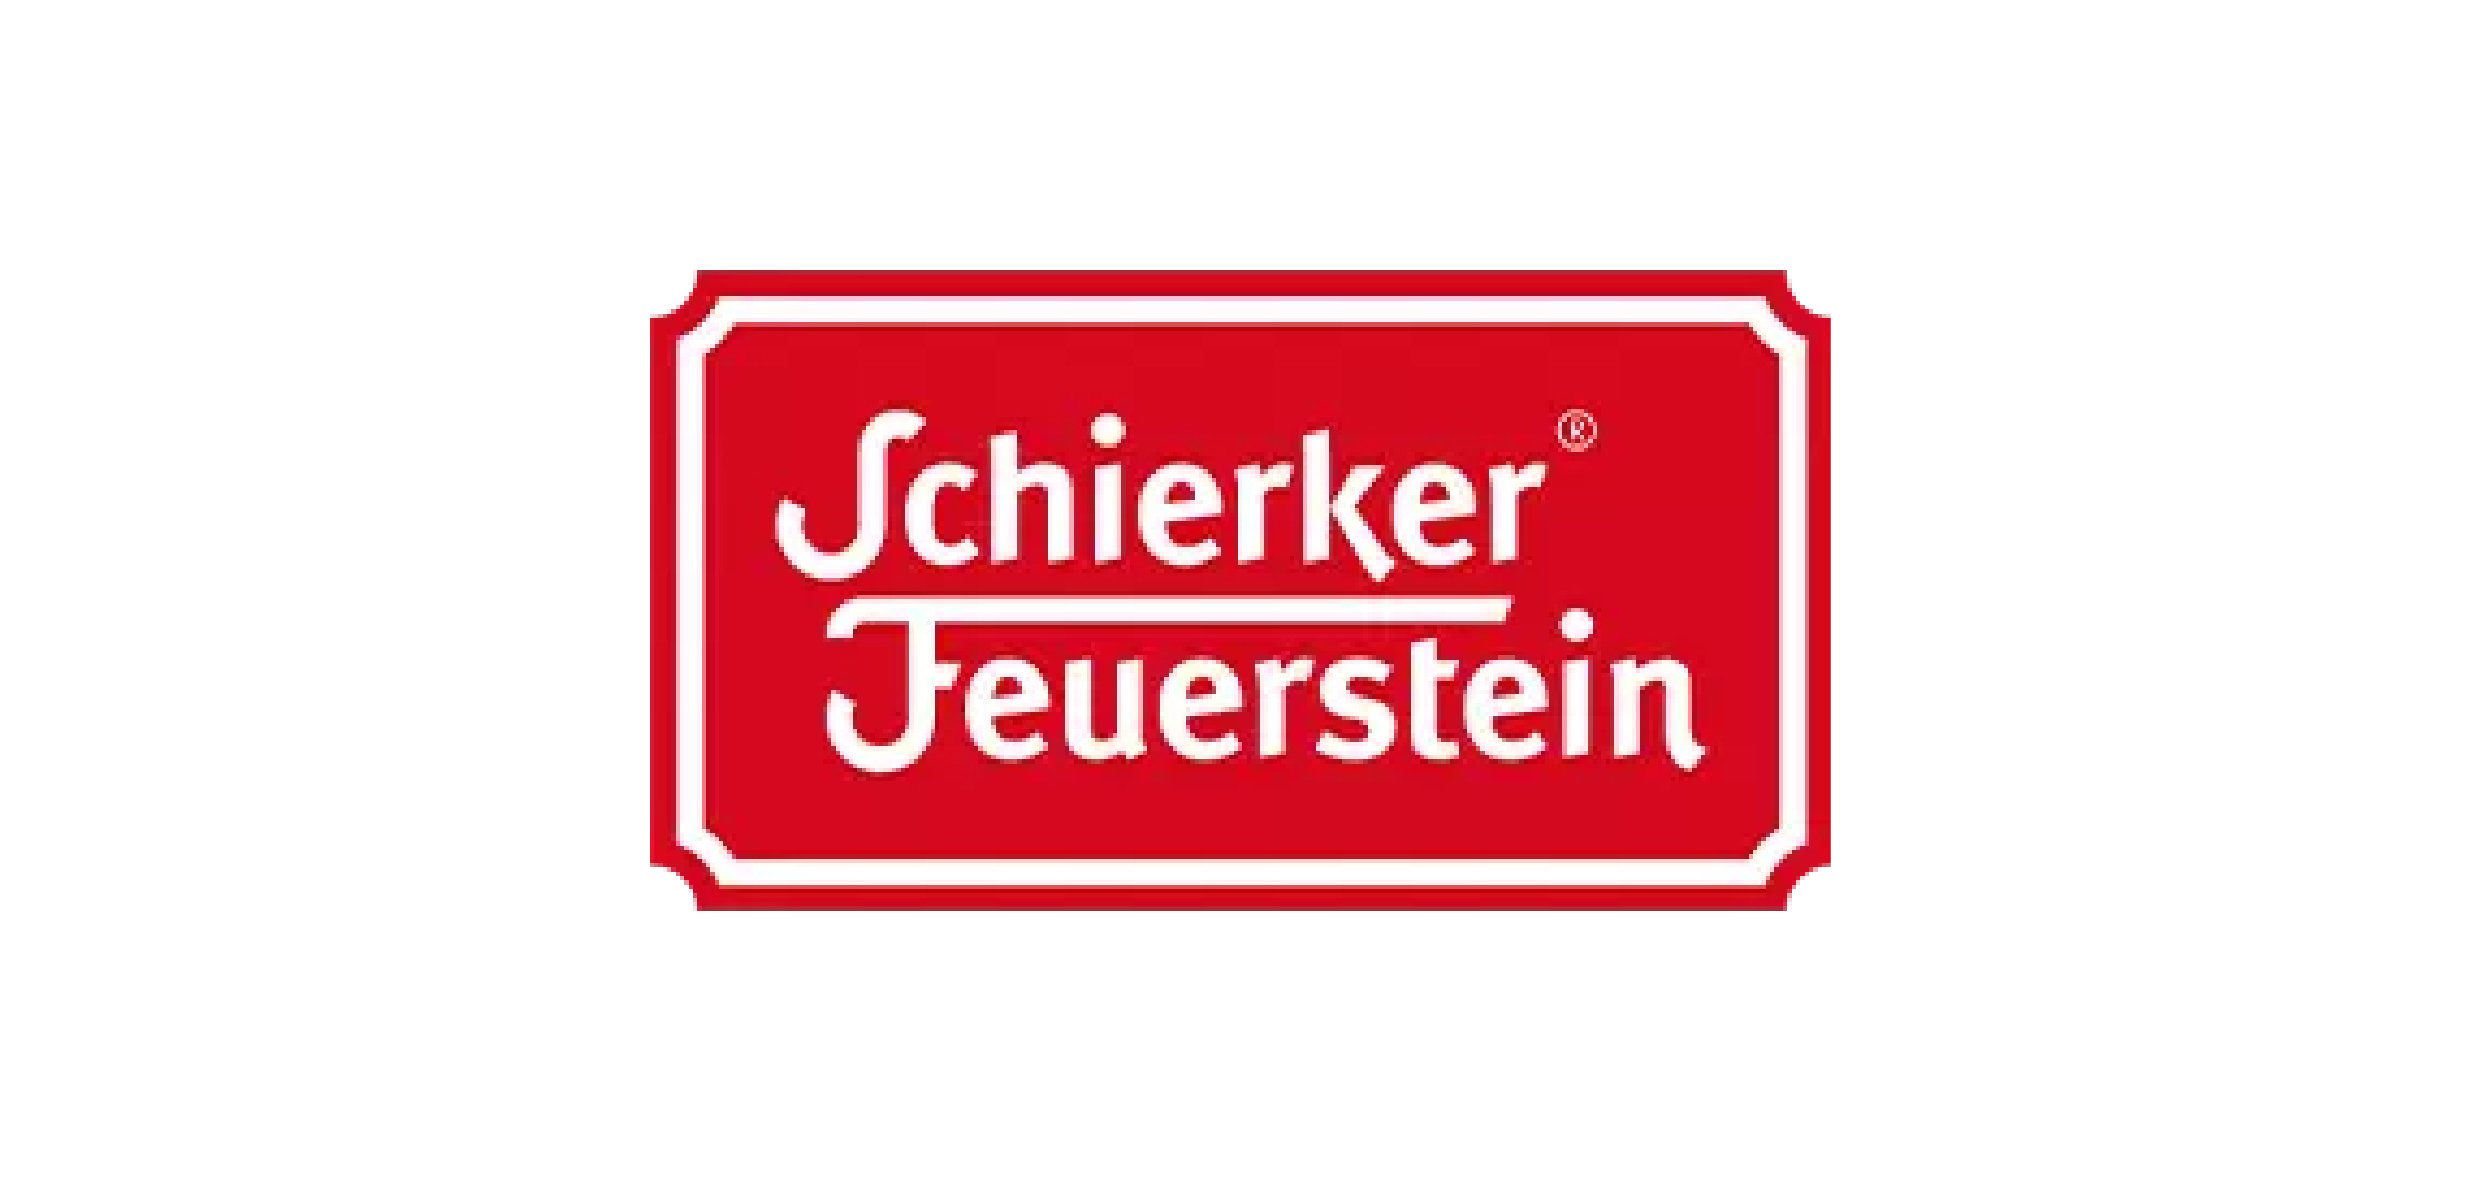 Schierker Feuerstein - Grafikdesign